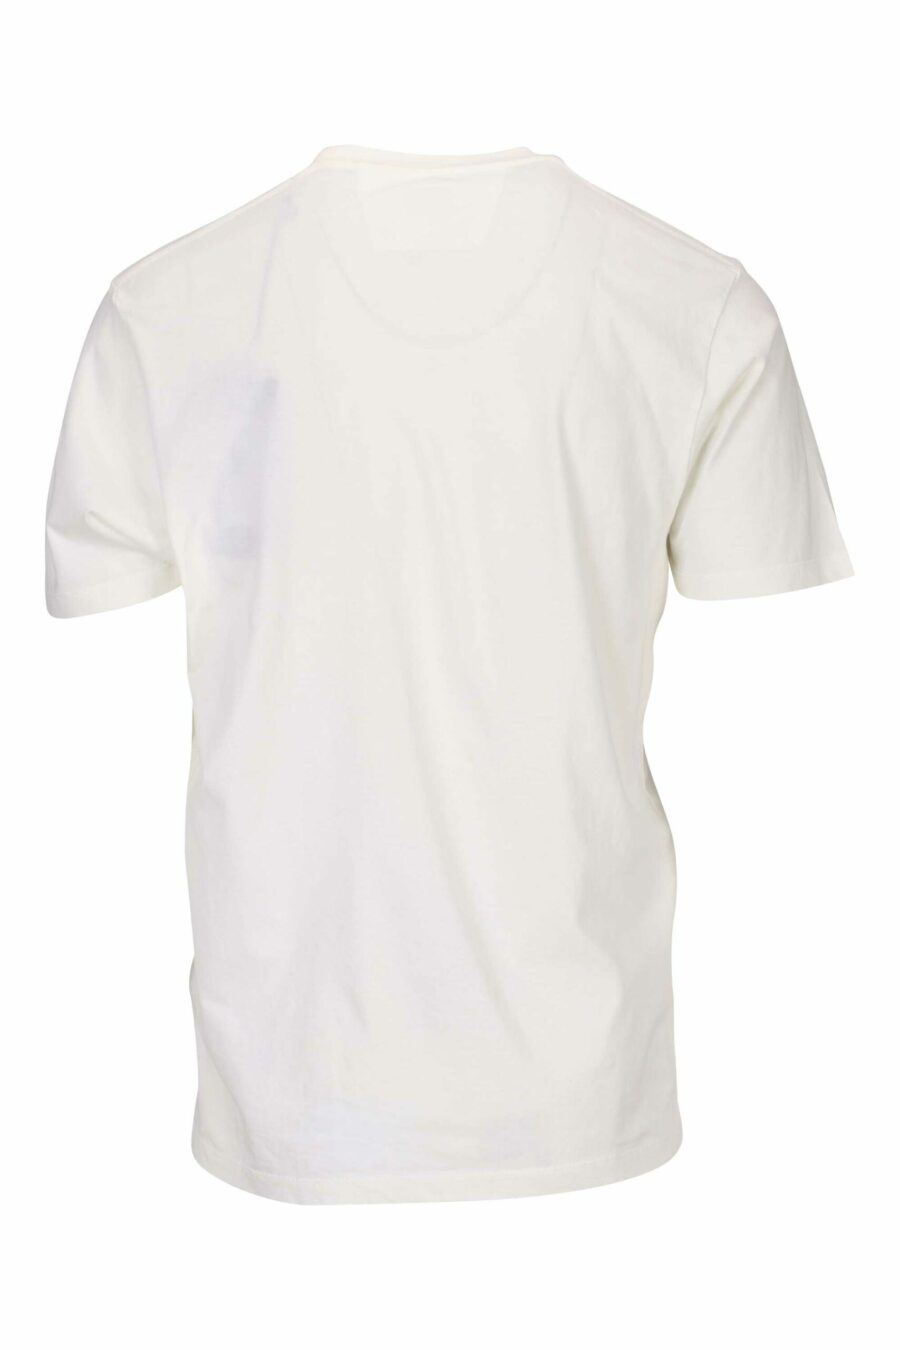 Weißes T-Shirt mit verschwommenem Seemann - 7620943601091 1 skaliert